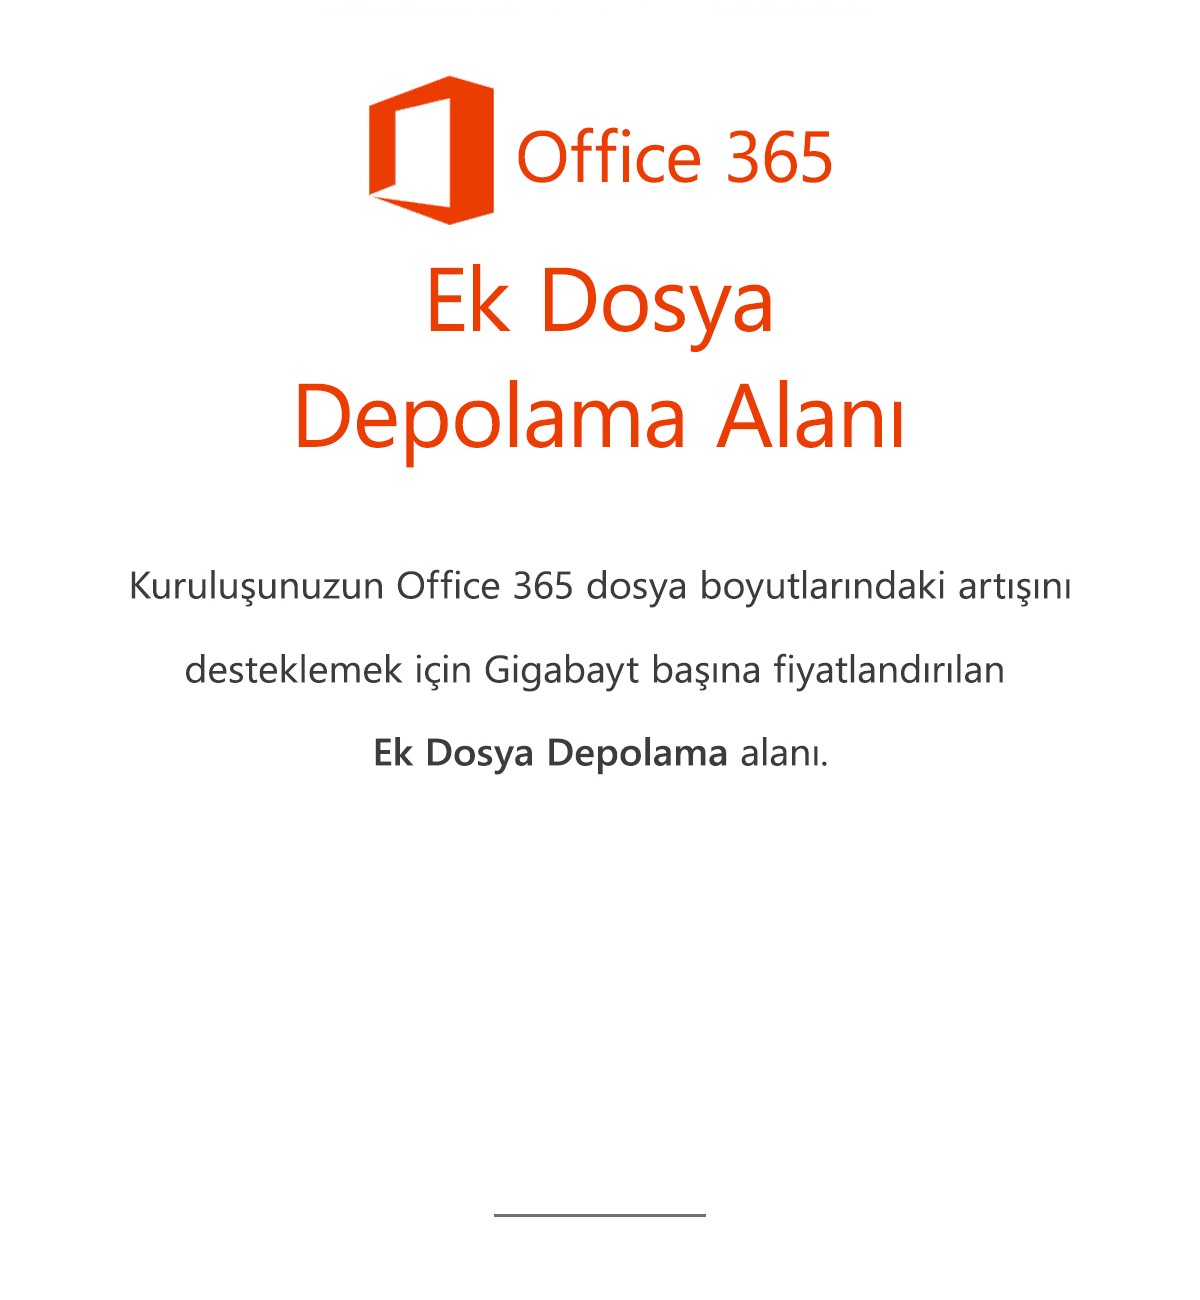 Office 365 Ek Dosya Depolama Alanı